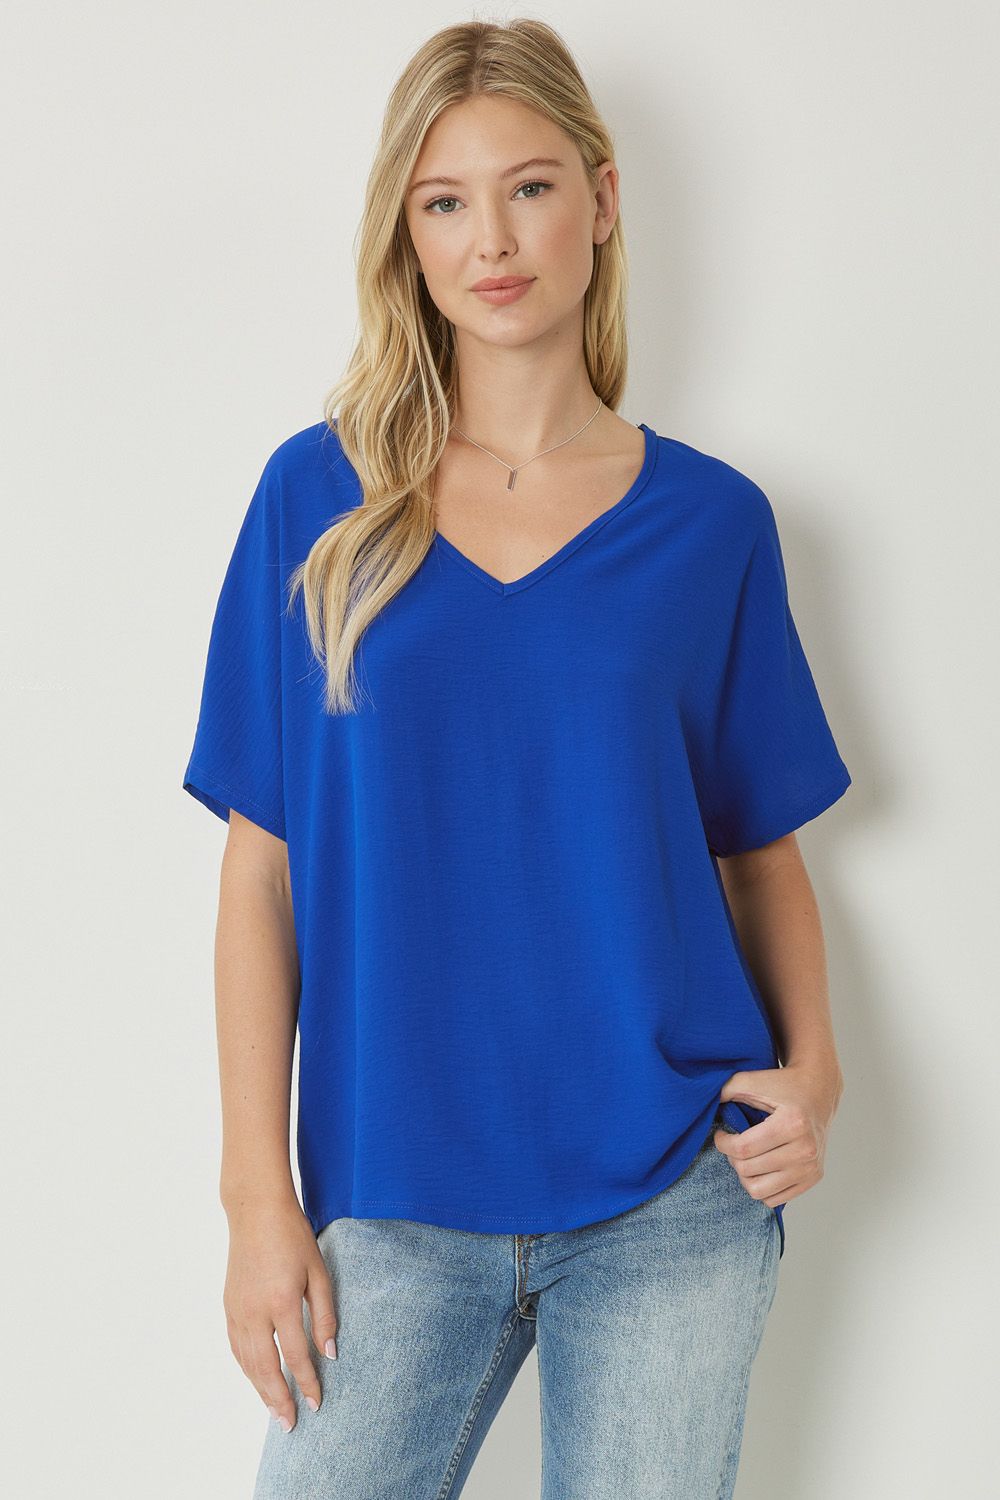 Women's royal blue basic v-neck shirt.